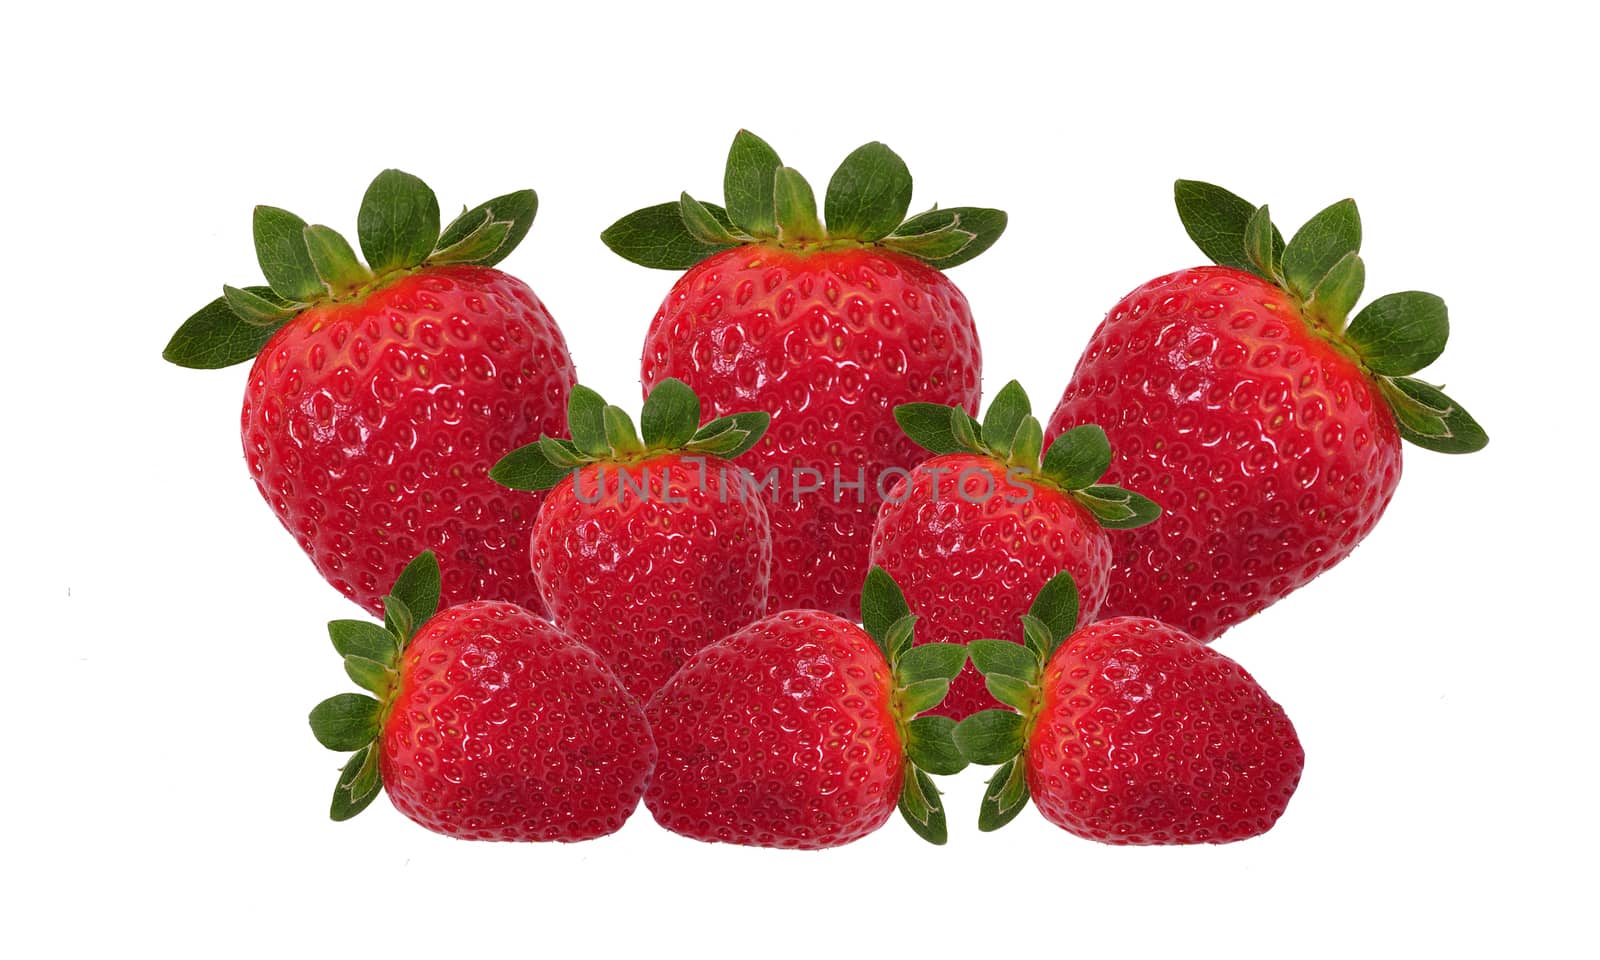 Strawberry by Nikola30